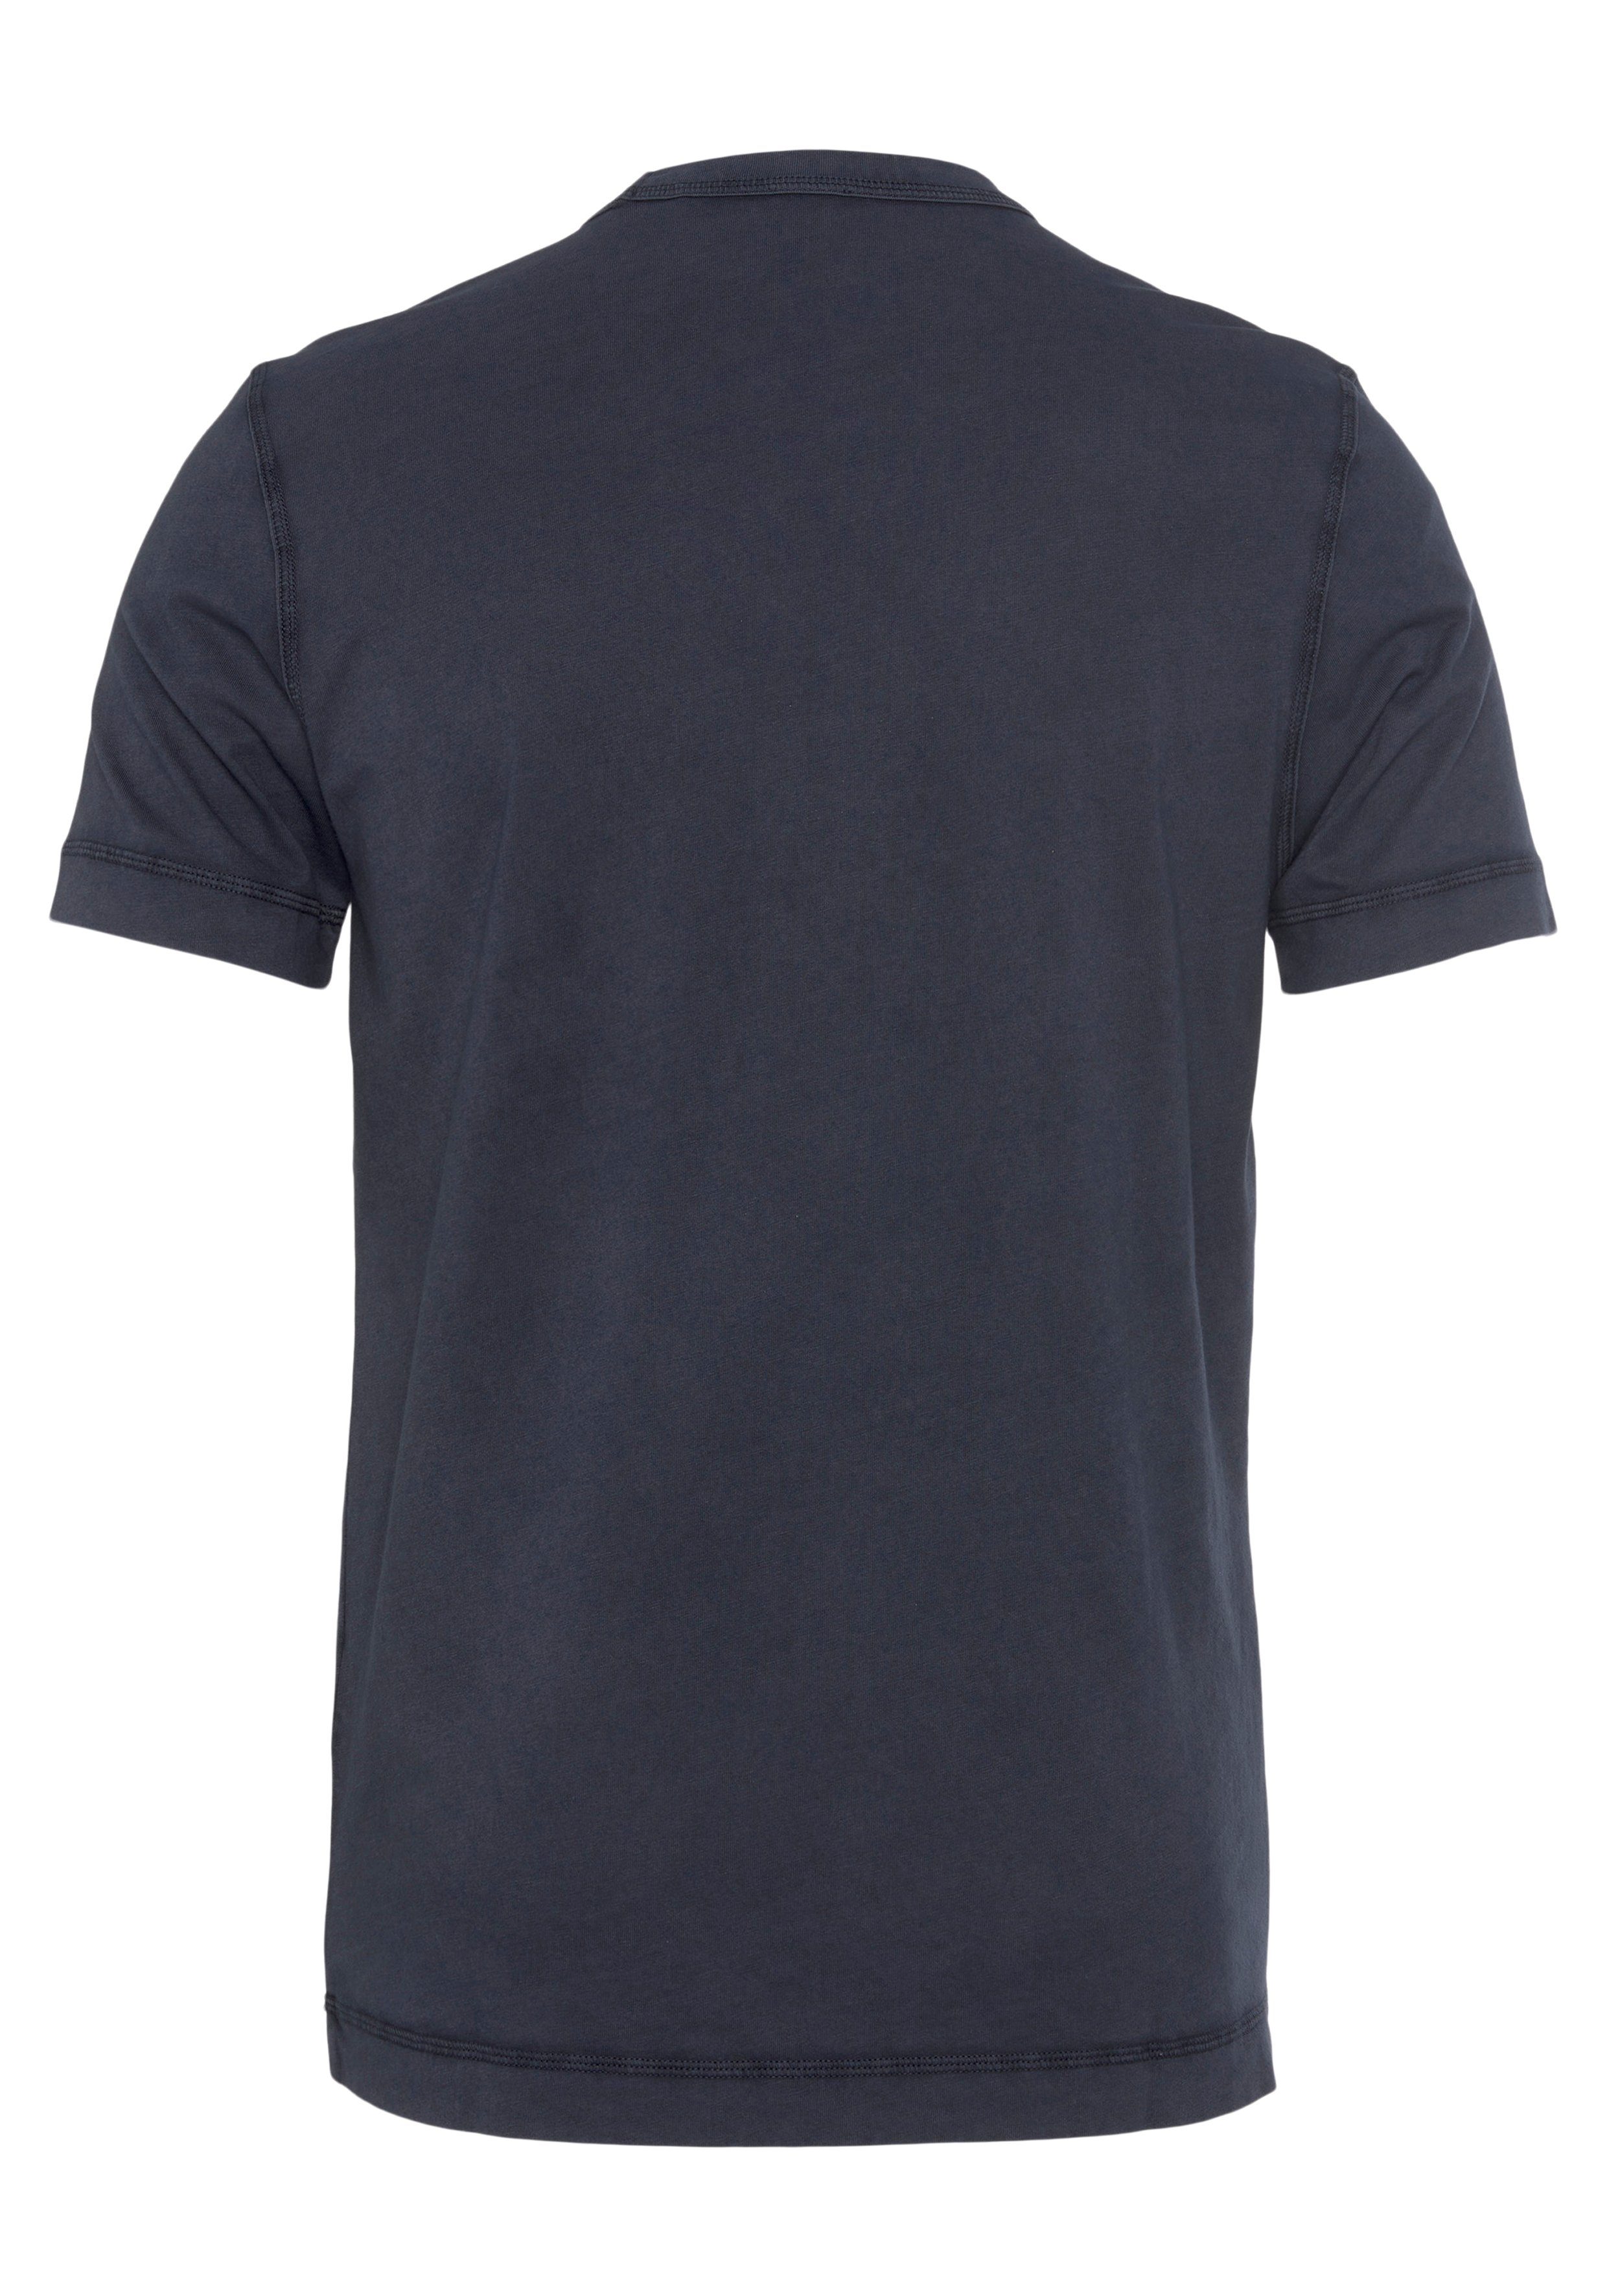 BOSS ORANGE T-Shirt Tokks BOSS blue404 ORANGE dark Markenlabel mit